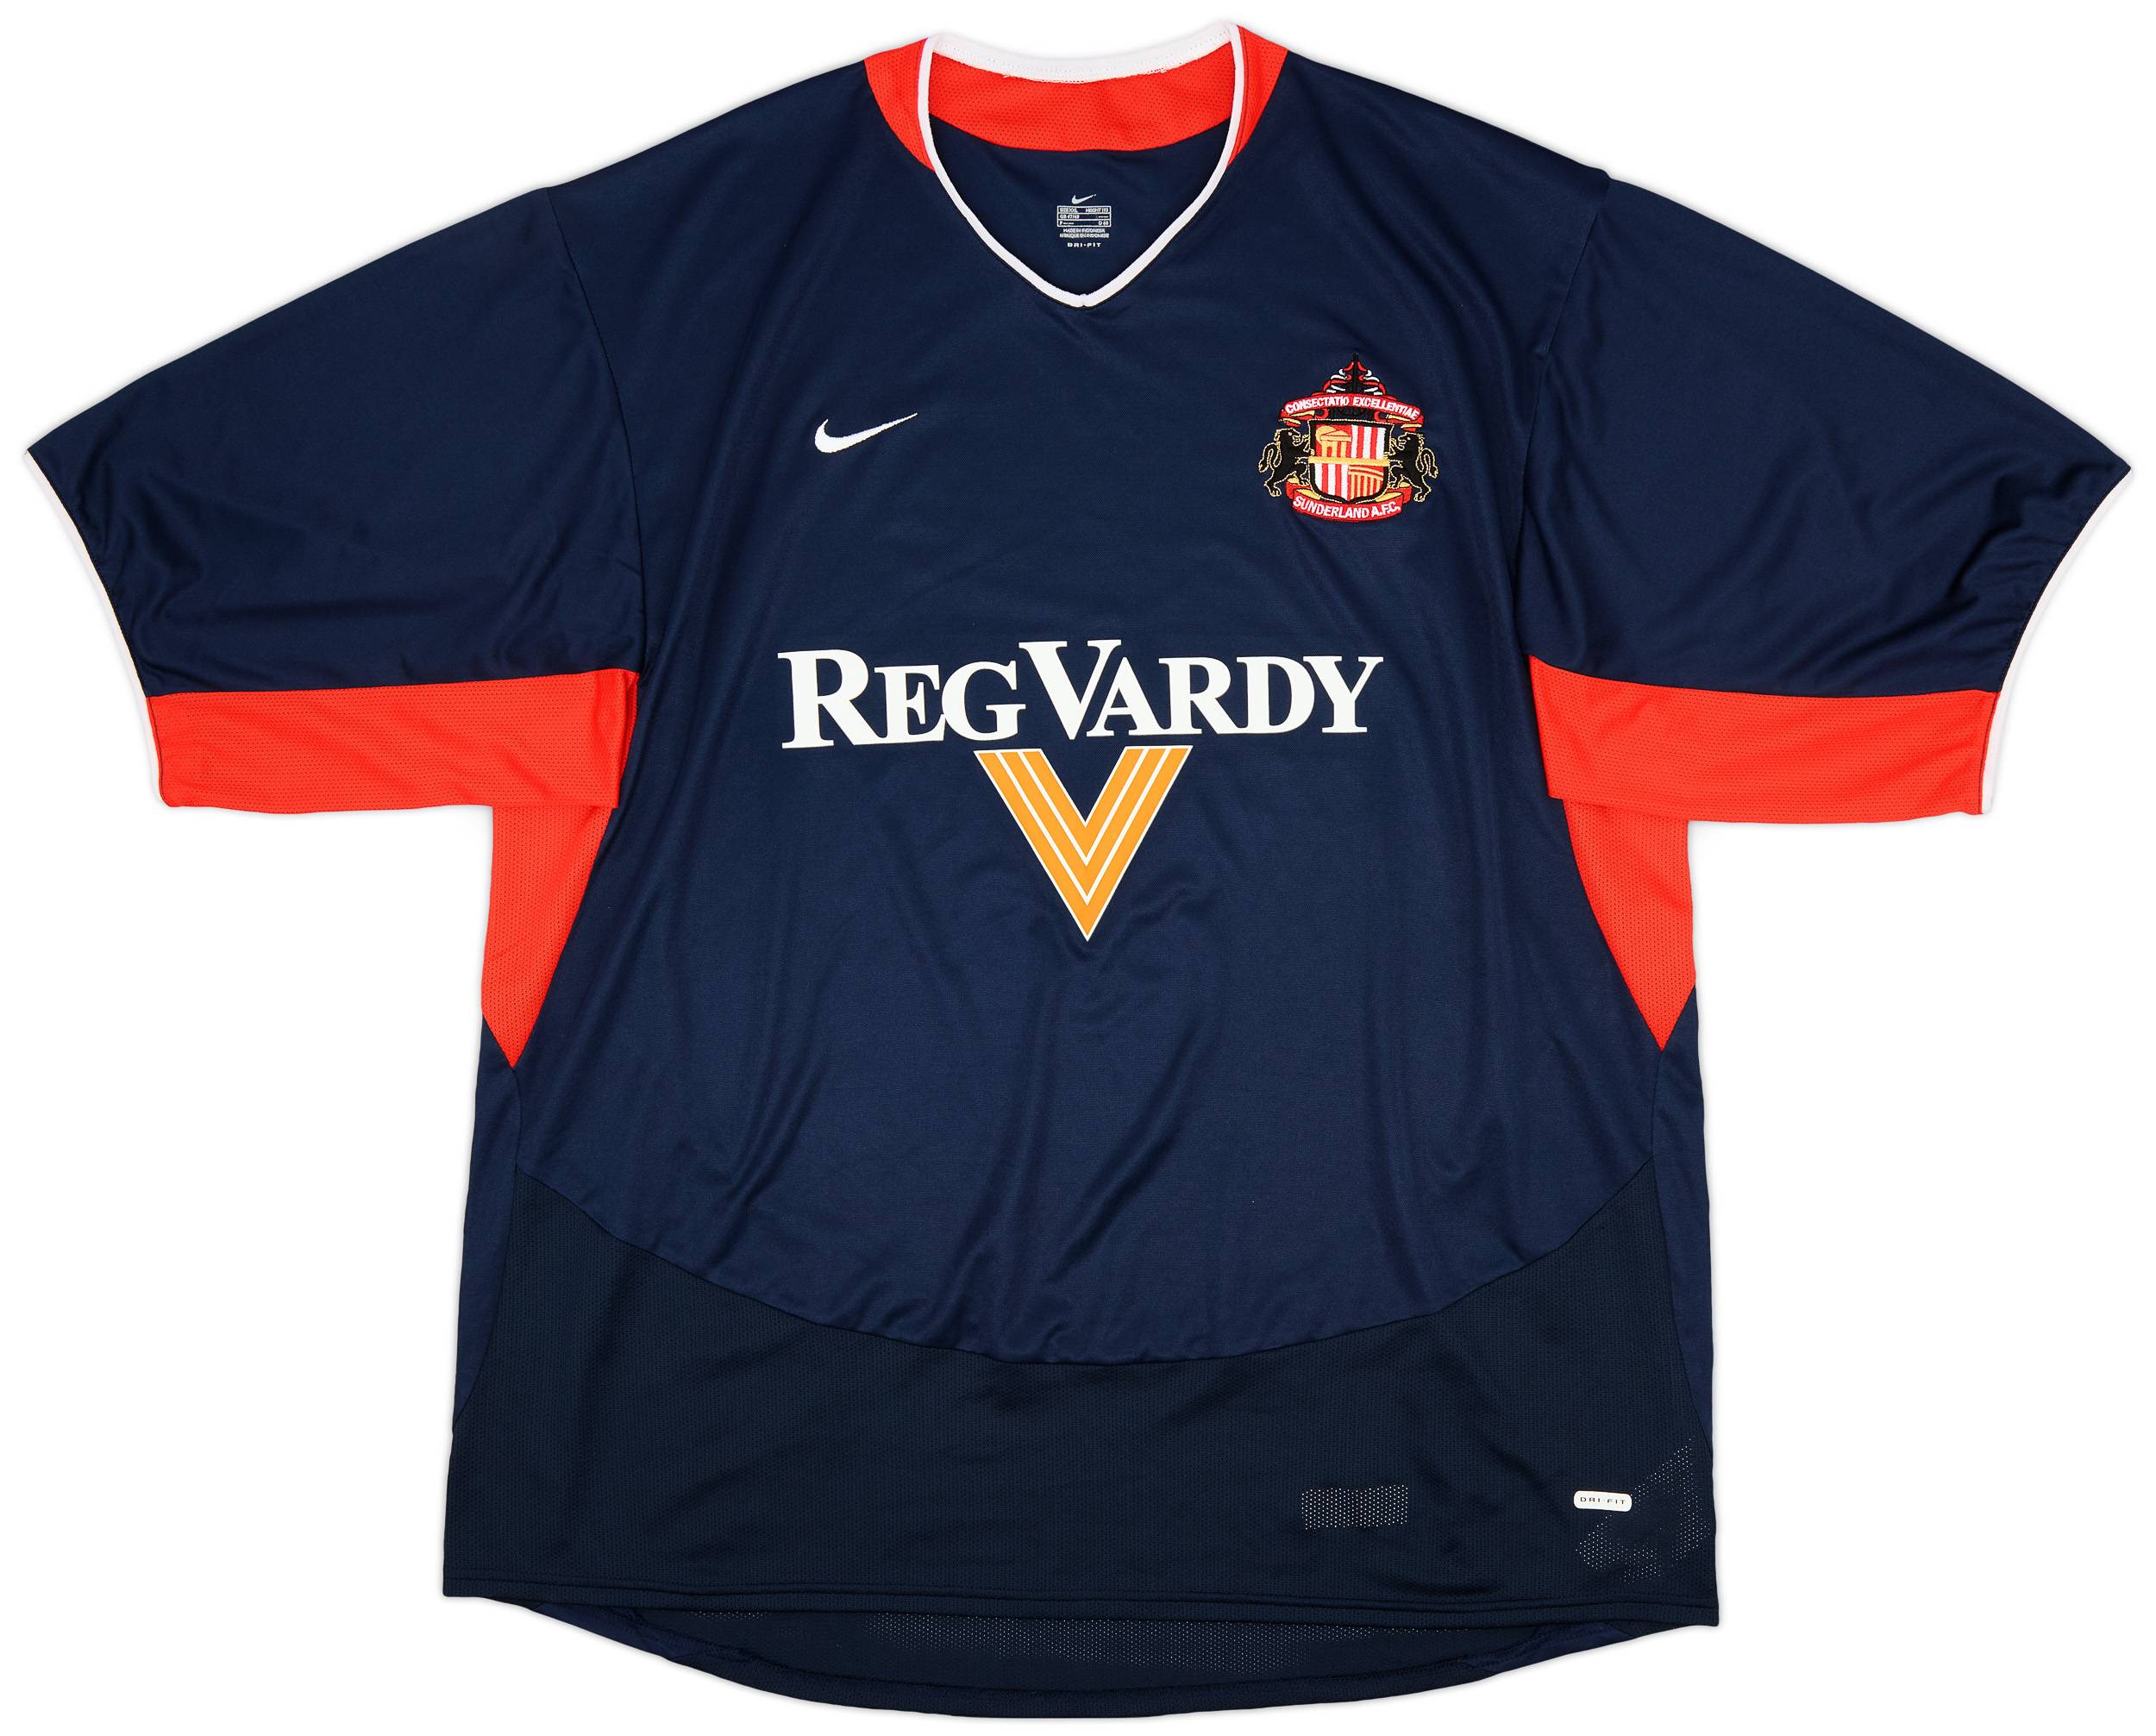 2003-04 Sunderland Away Shirt - 9/10 - (XXL)